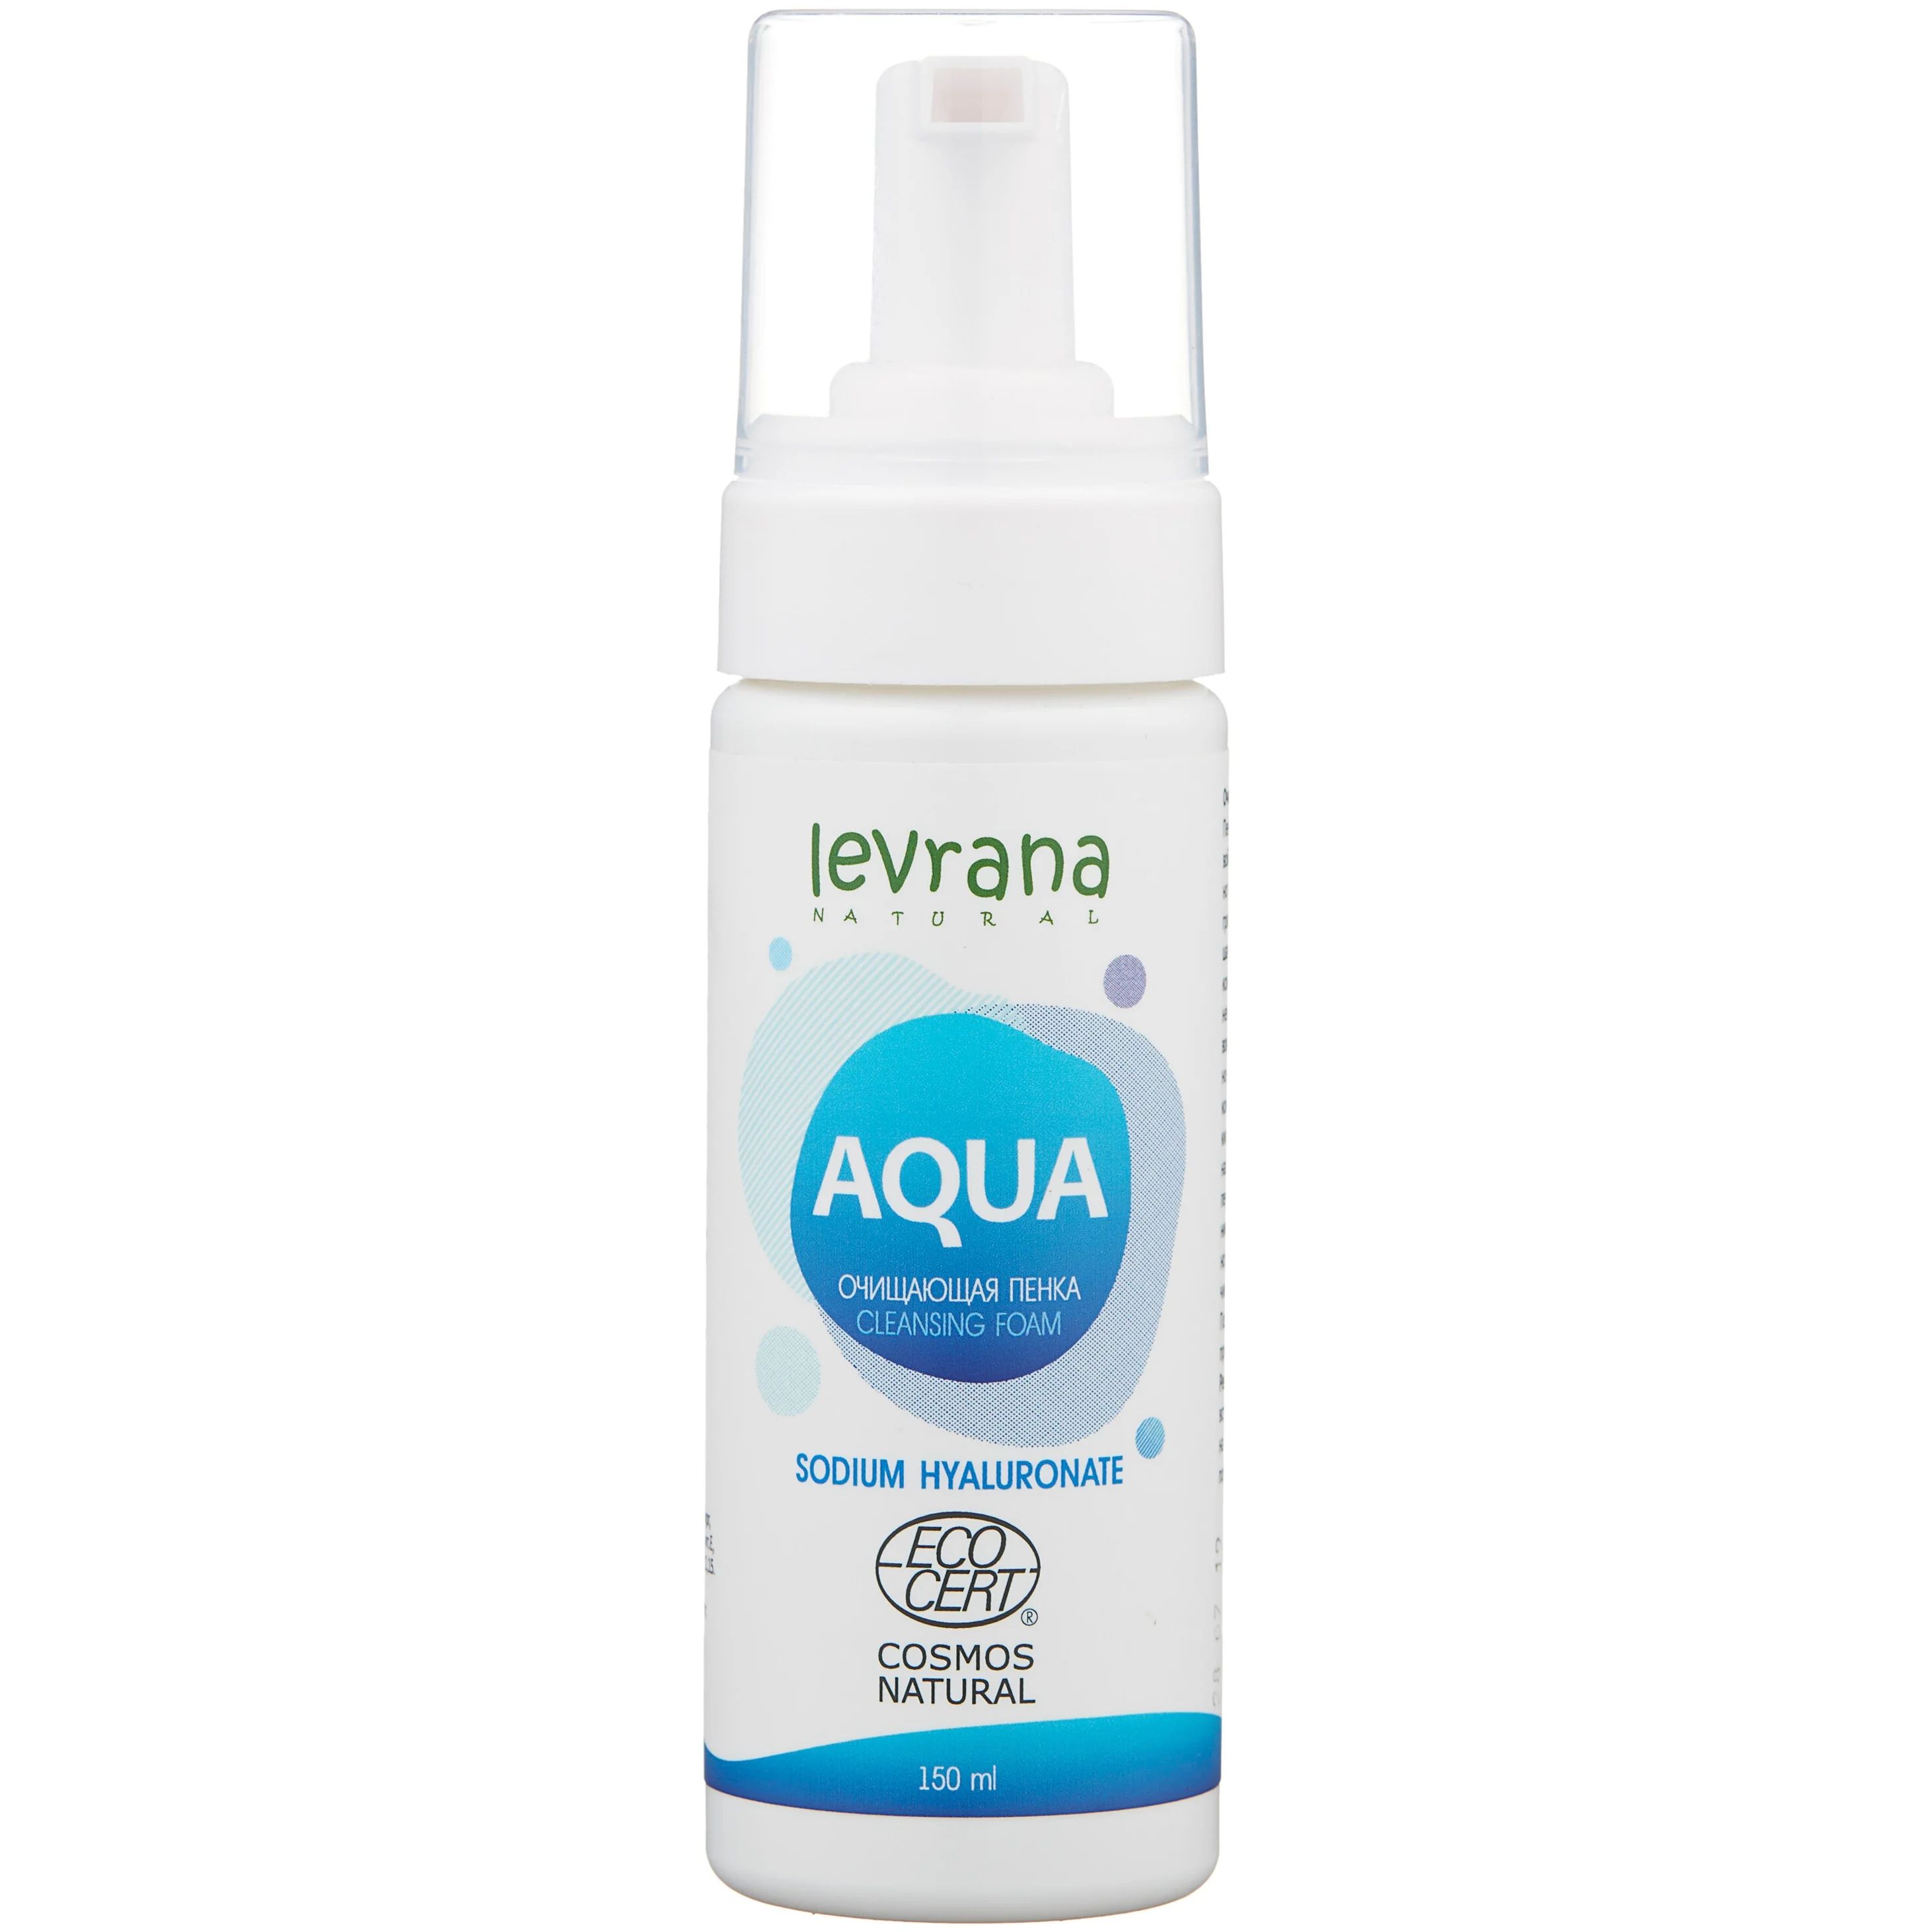 Пенка для умывания LEVRANA Aqua с гиалуроновой кислотой, увлажняющая, очищающая, 150 мл rosette 40% увлажнения увлажняющая и влагосберегающая пенка с гиалуроновой кислотой 168